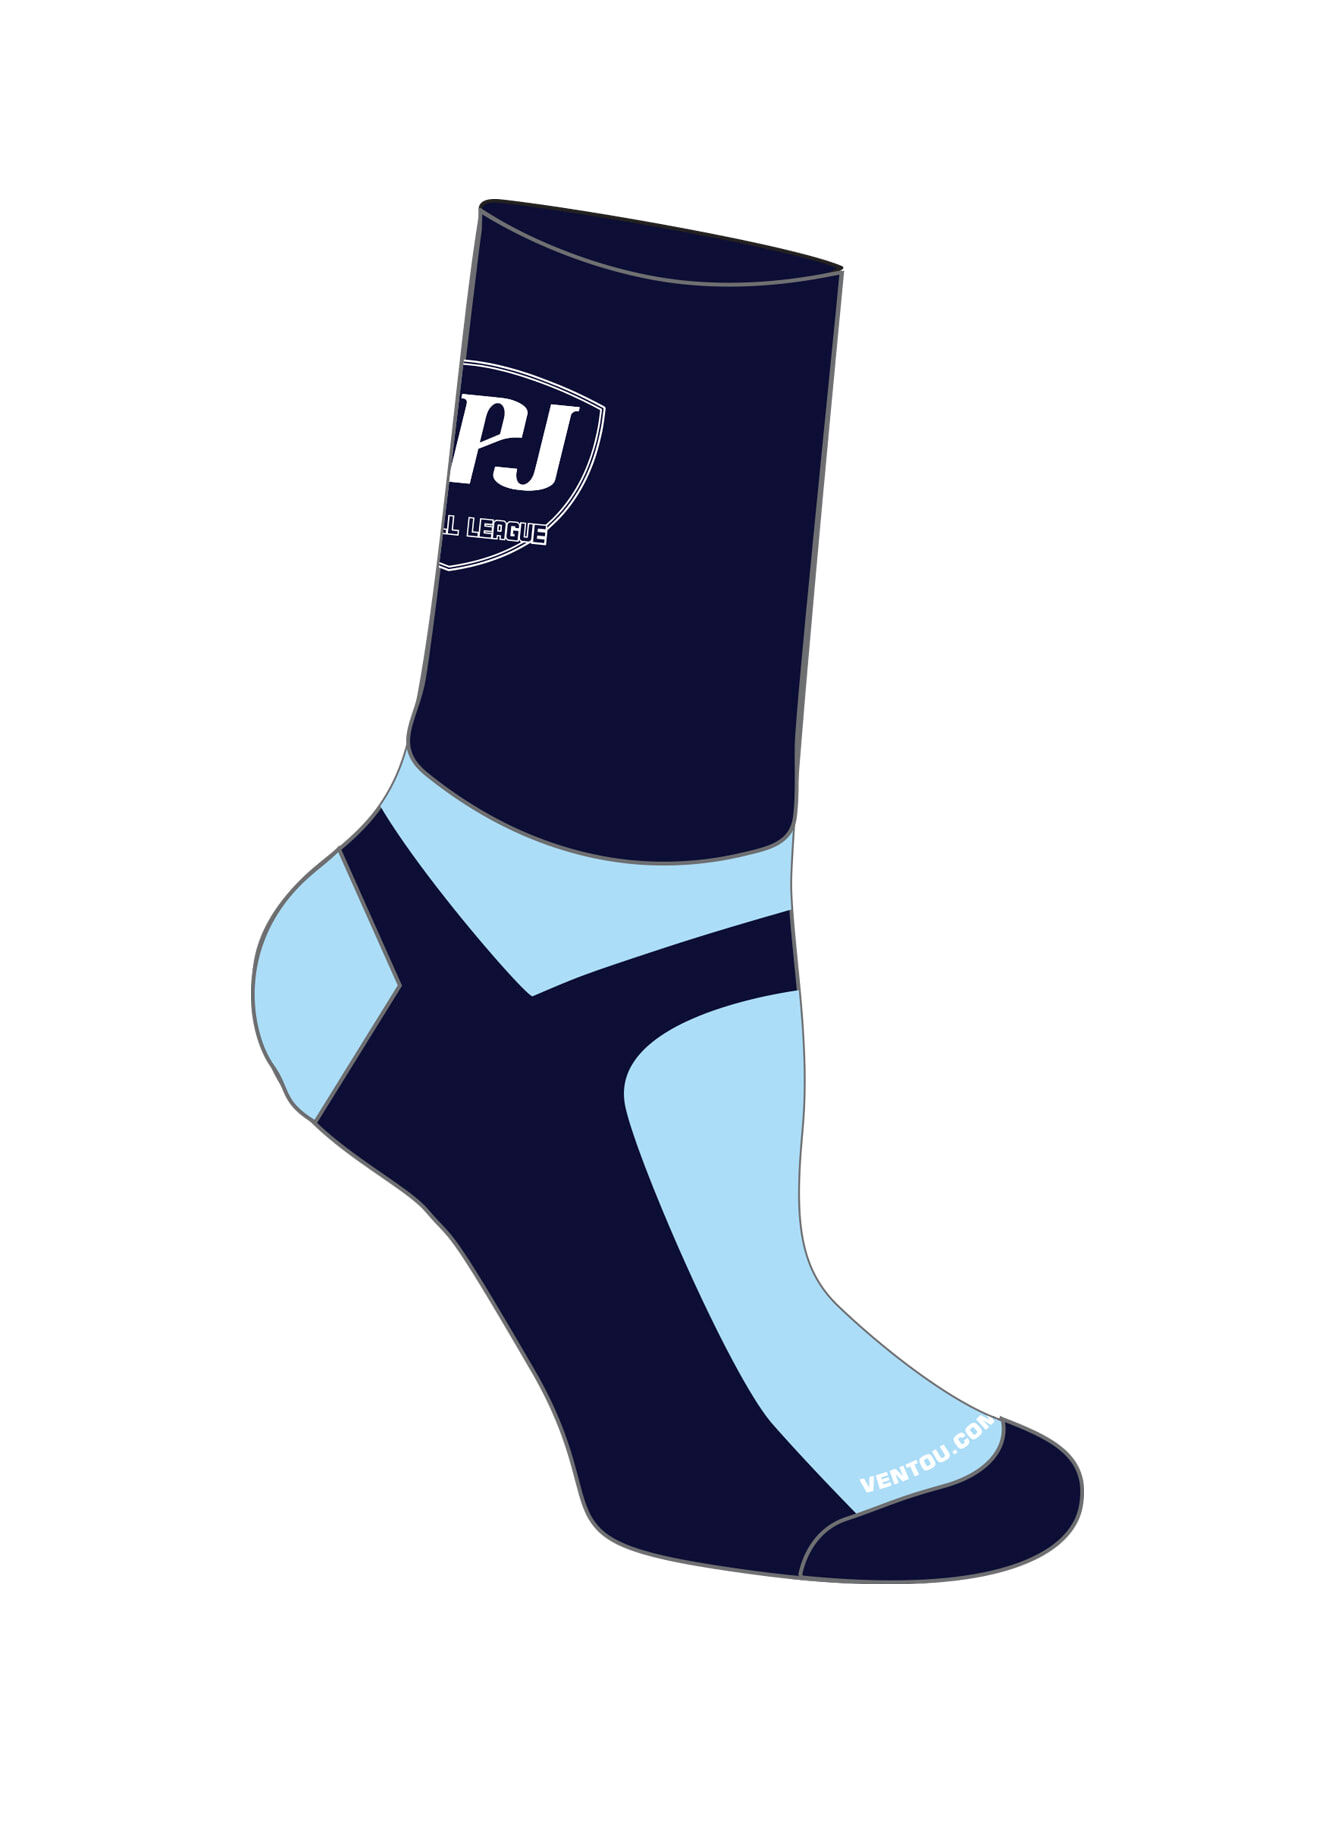 MPJ Socks 02